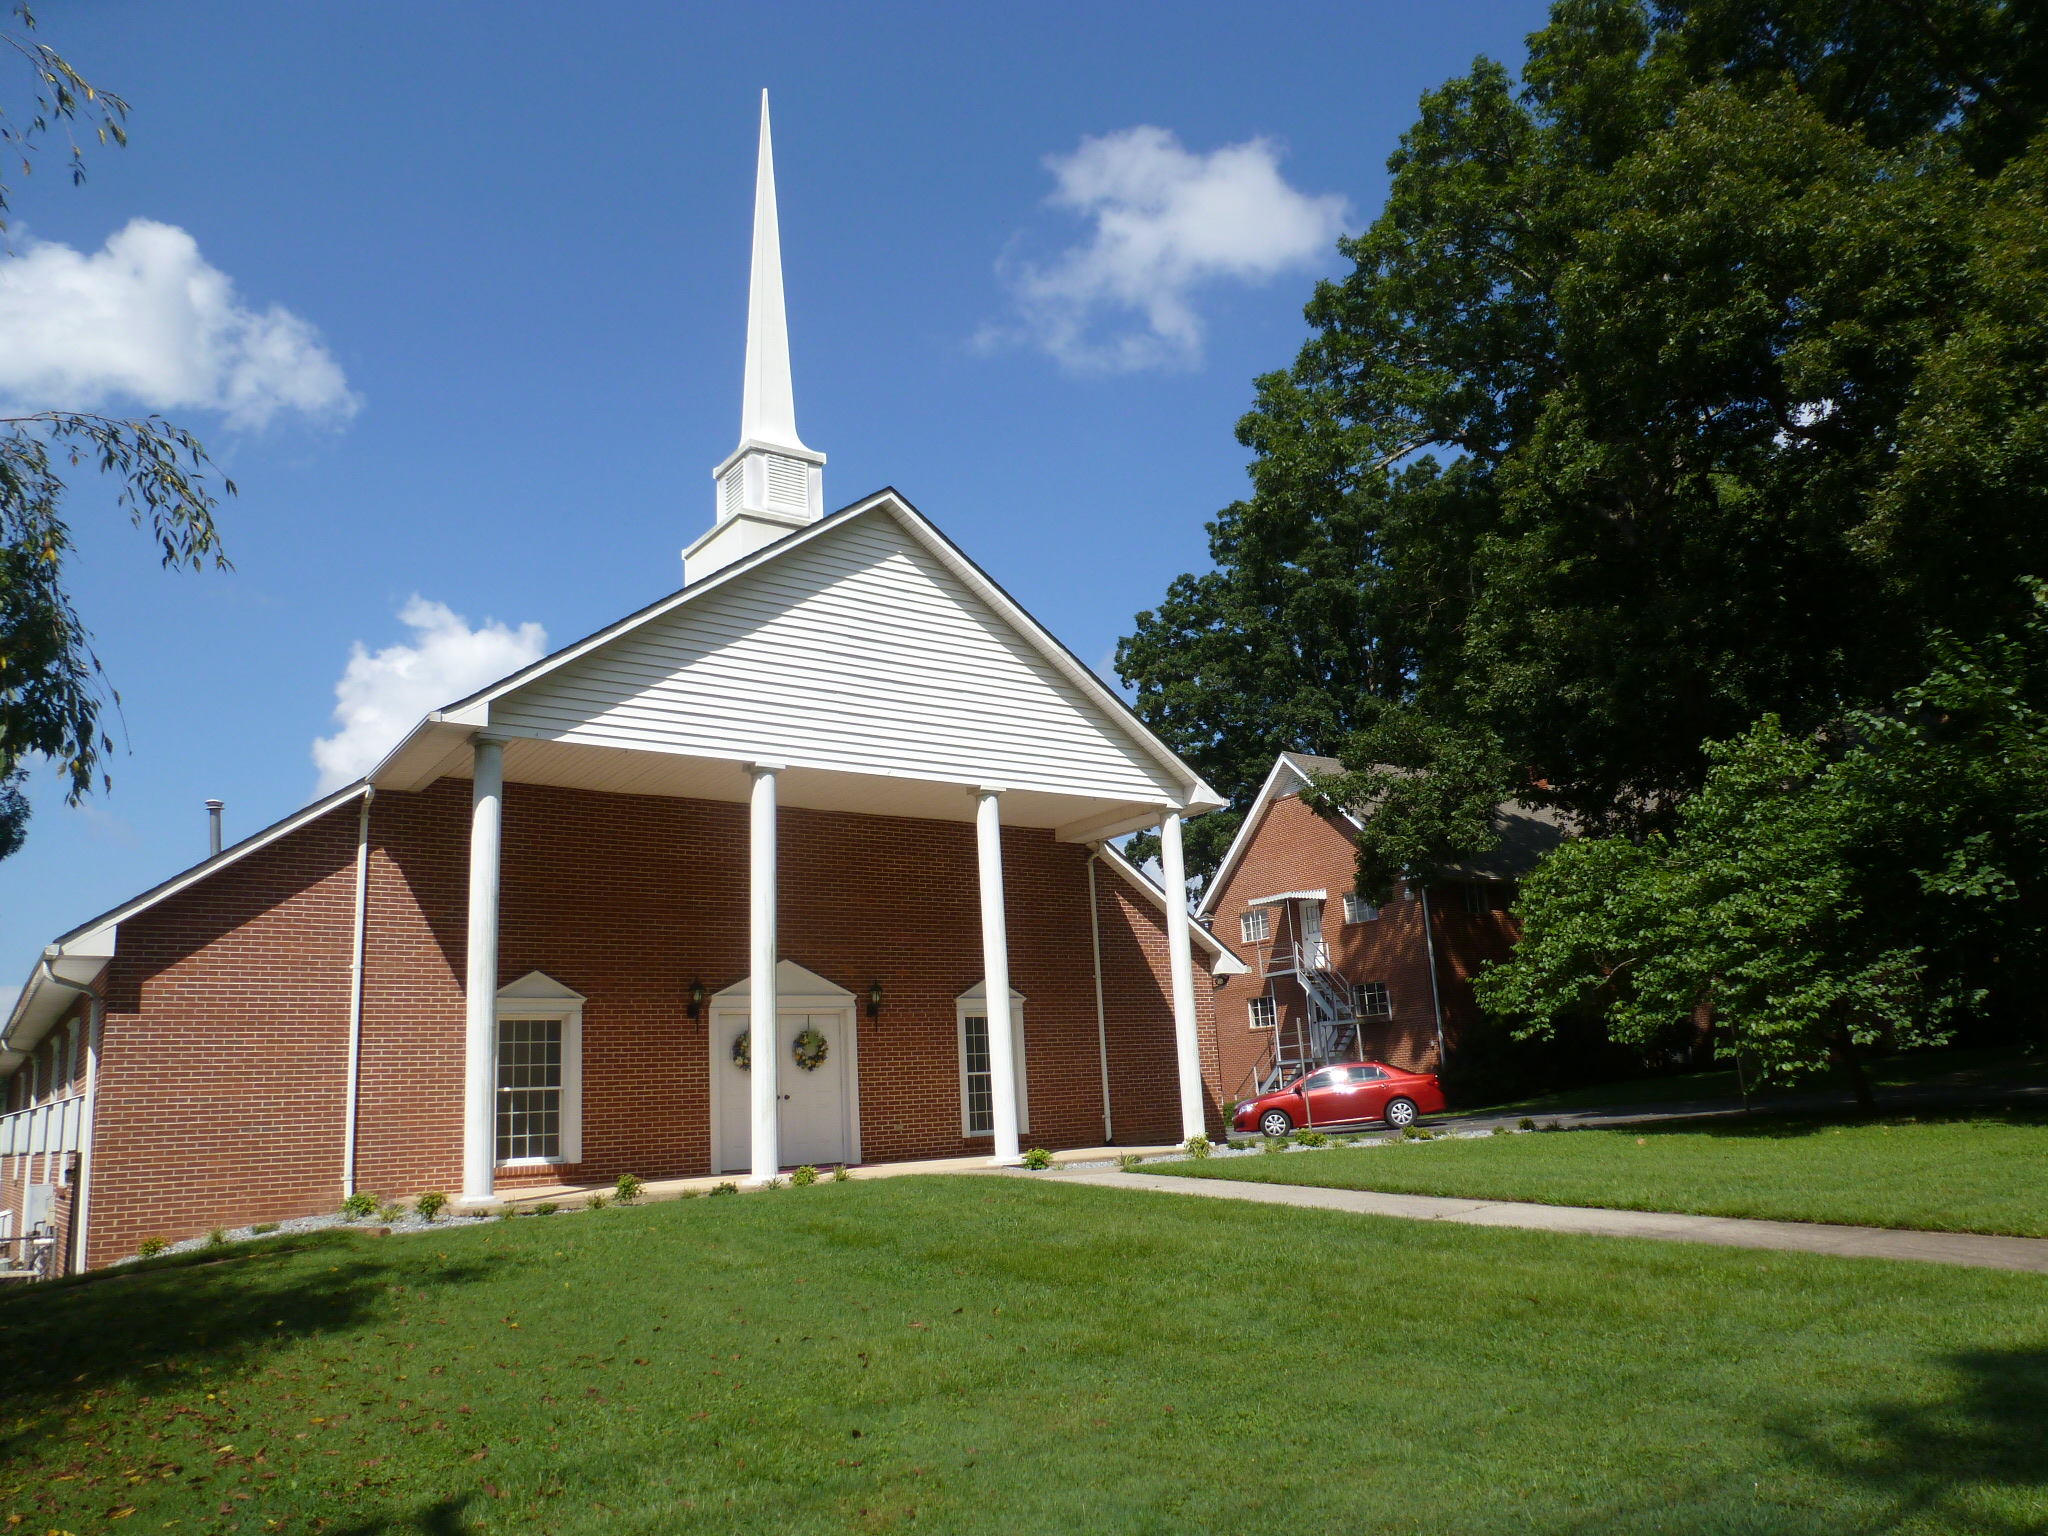 Story Memorial Presbyterian Church Presbyterian Church of America